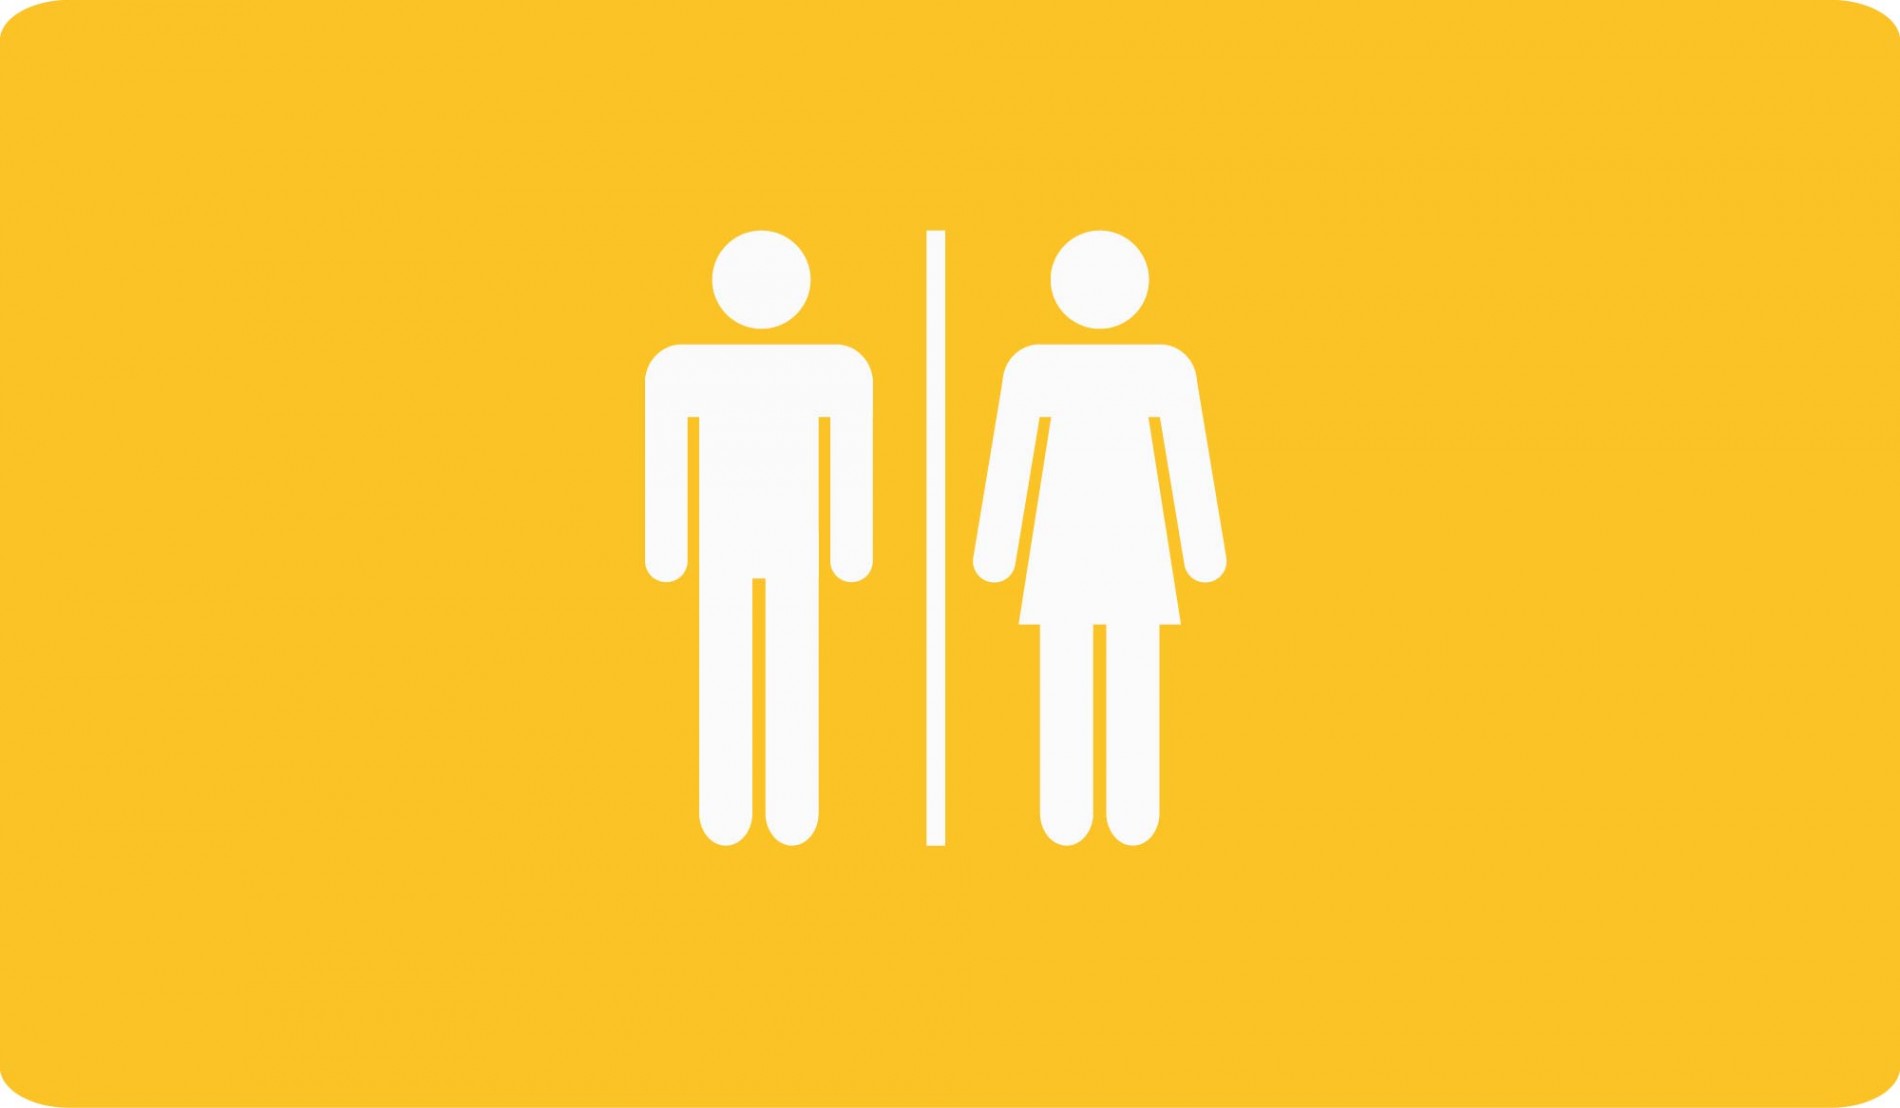 Không còn phải lo lắng tìm kiếm nhà vệ sinh công cộng nam khi đi du lịch hay công tác, bởi hiện nay các khu vực công cộng đã được trang bị đầy đủ ký hiệu cho nhà vệ sinh nam. Các ký hiệu này giúp bạn nhanh chóng tìm ra nhà vệ sinh nam gần nhất mà không phải lãng phí thời gian.